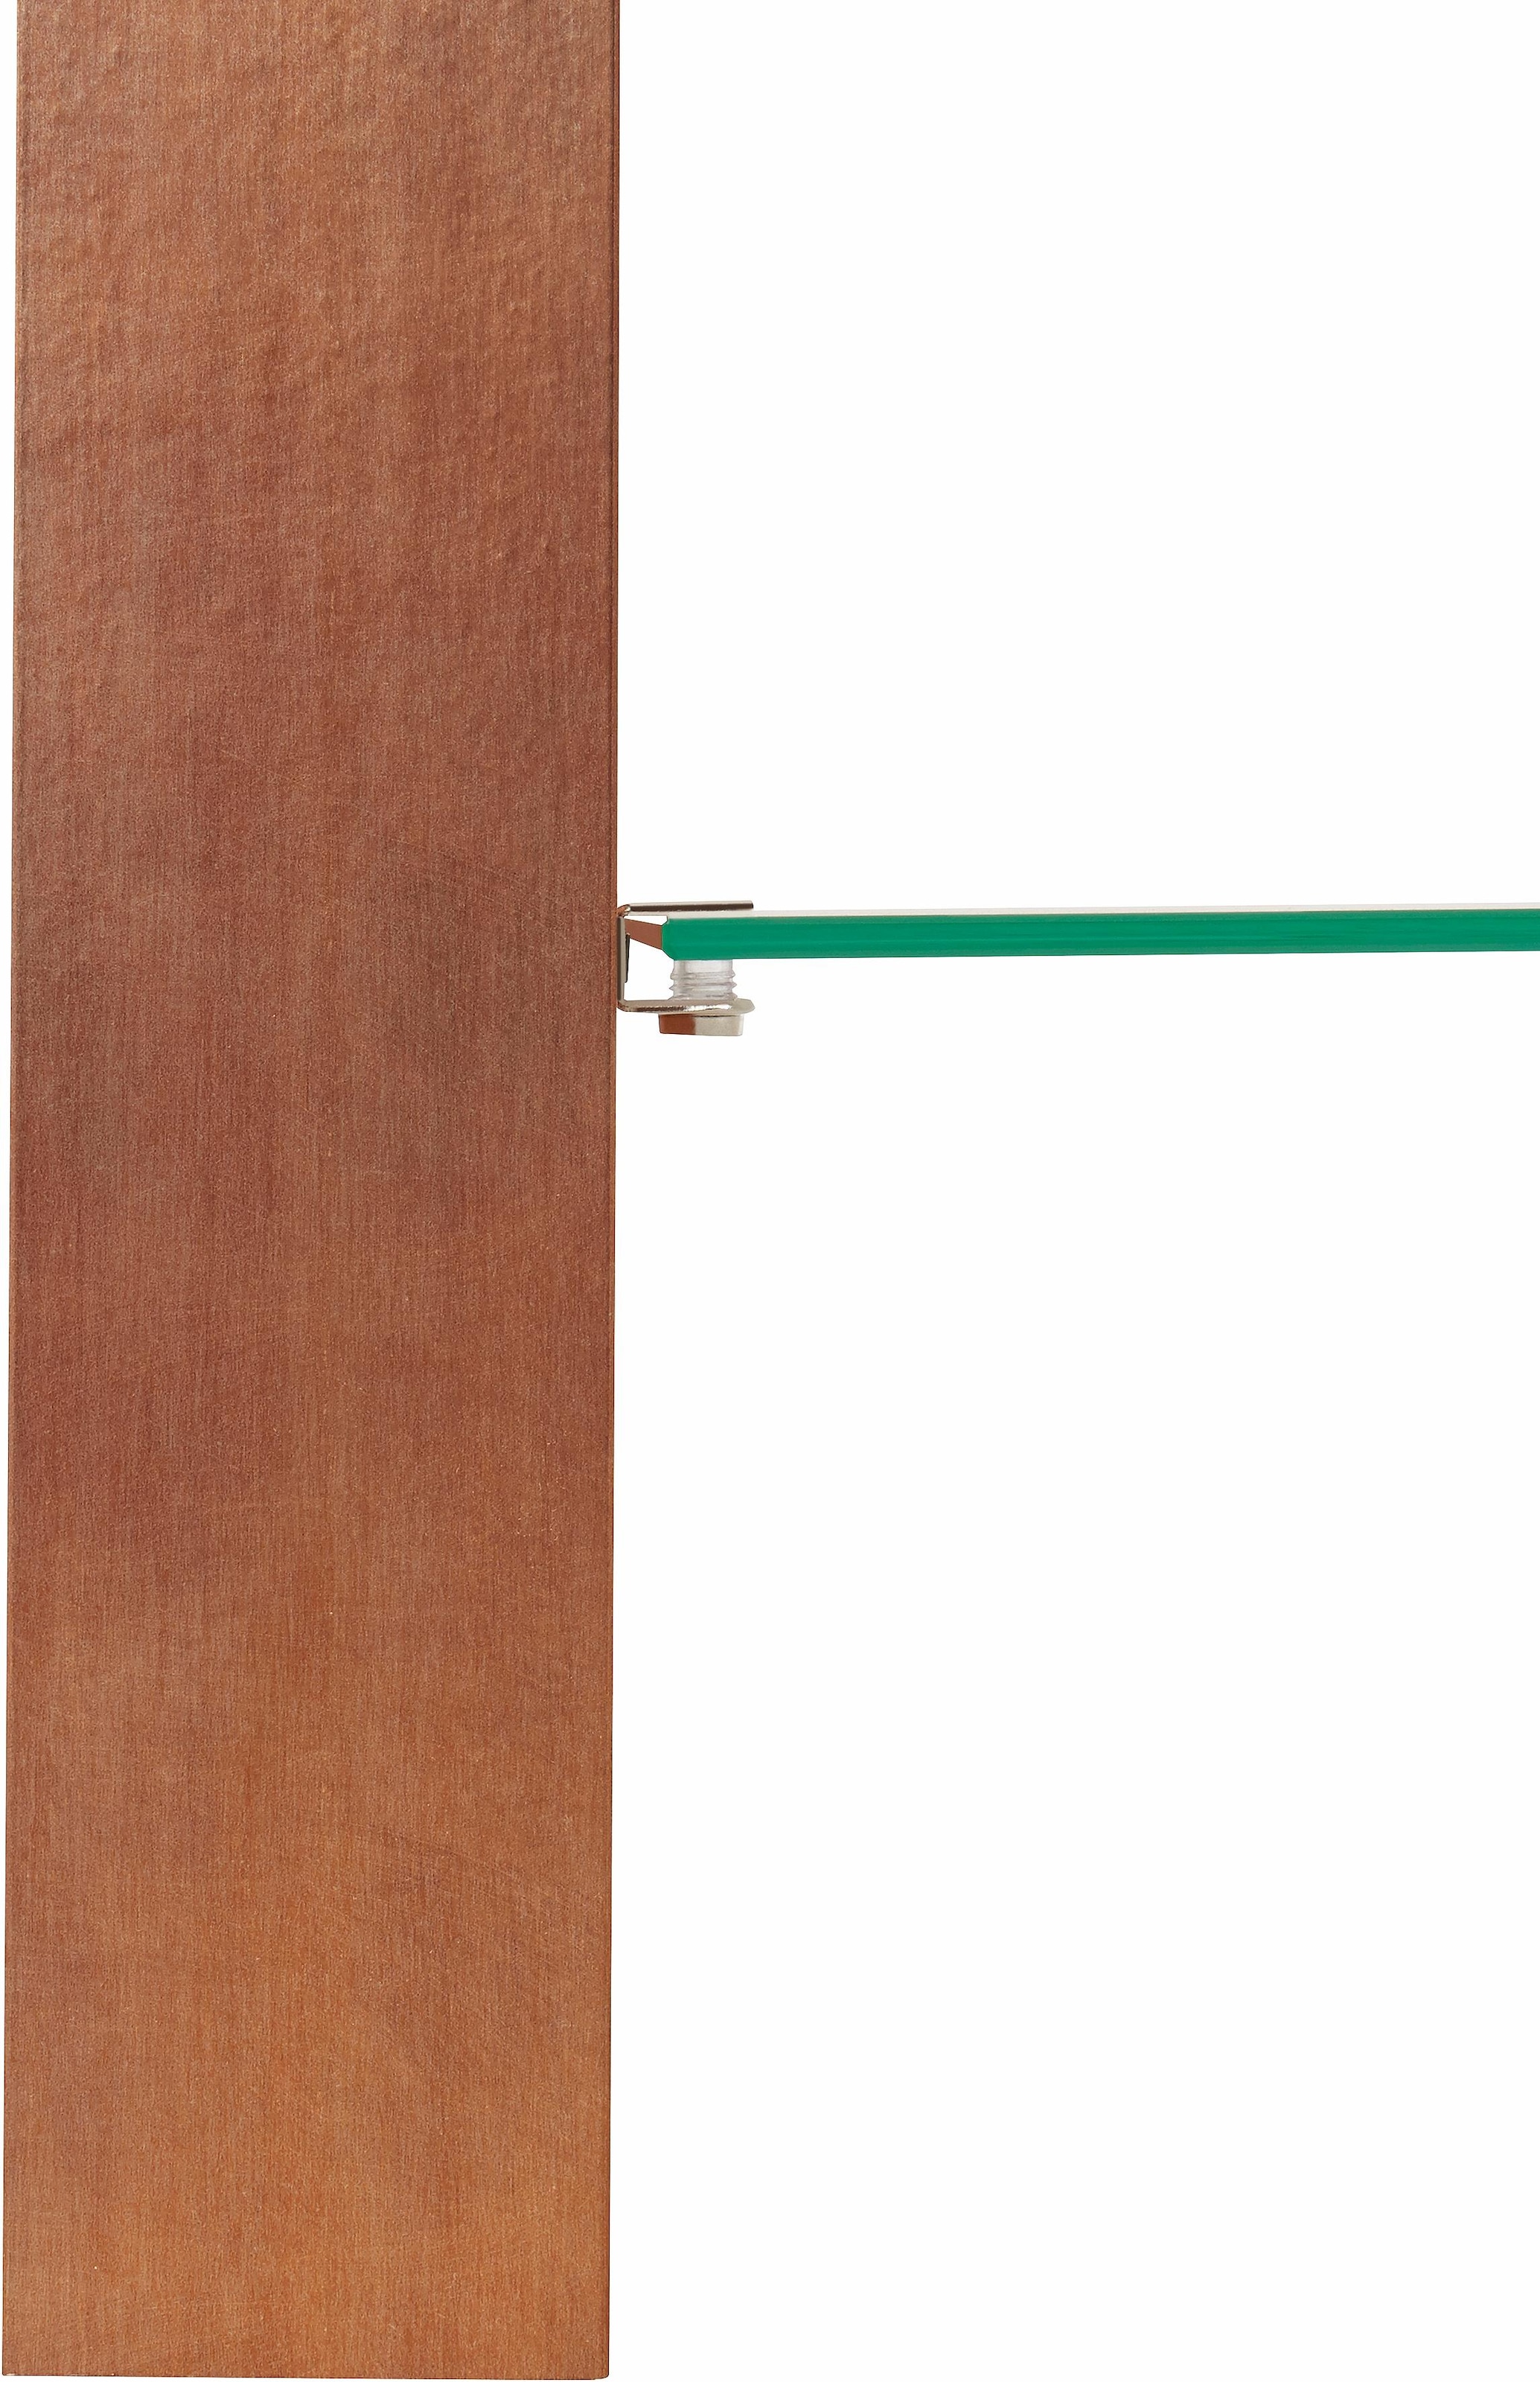 PRO Line Couchtisch, mit Glasplatte, Ablageboden aus Glas, Gestell aus Holz kupferfarbig